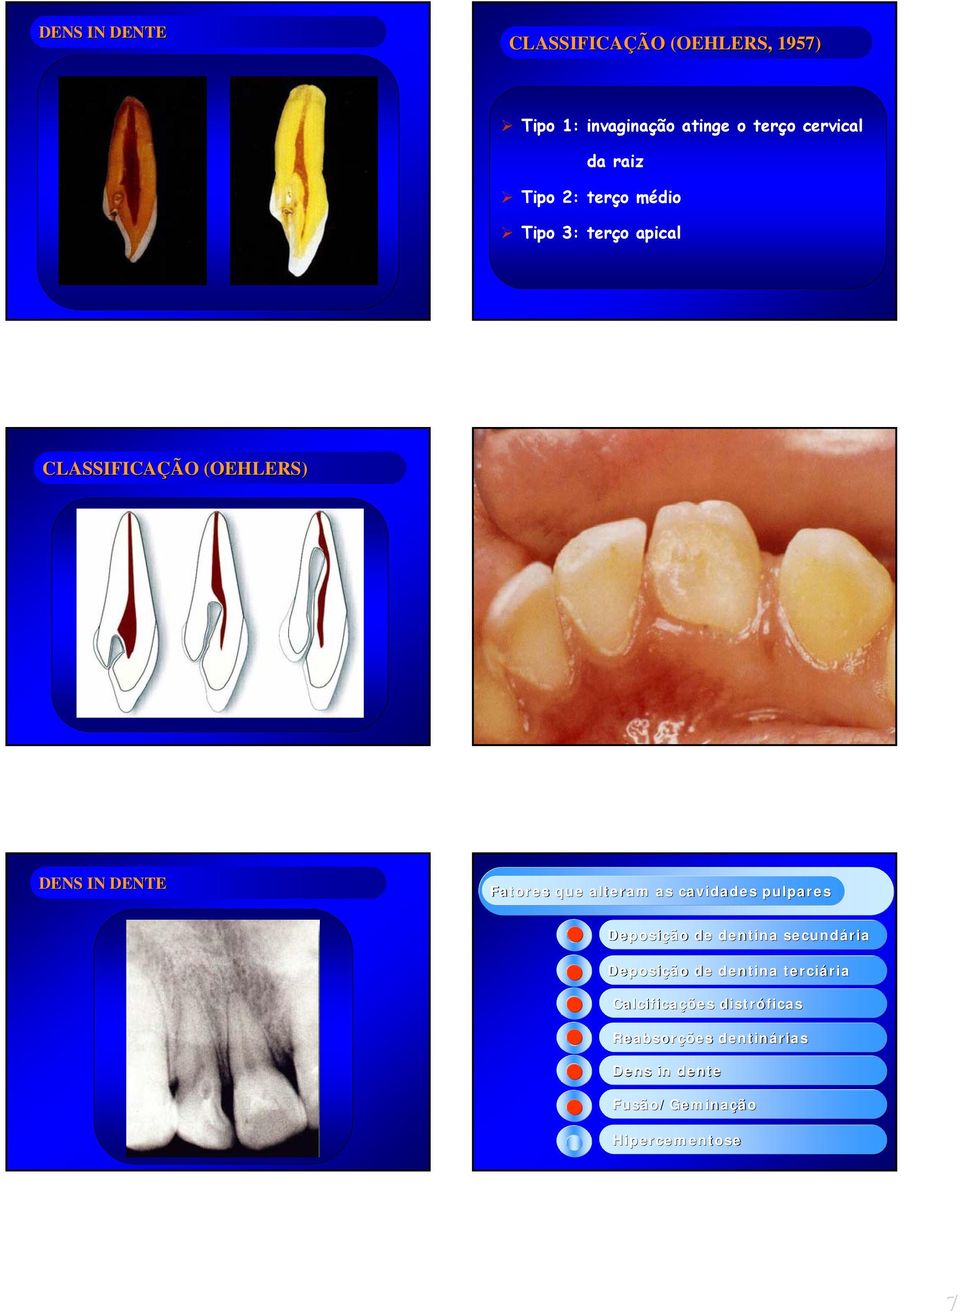 que alteram as cavidades pulpares Deposição de dentina secundária Deposição de dentina